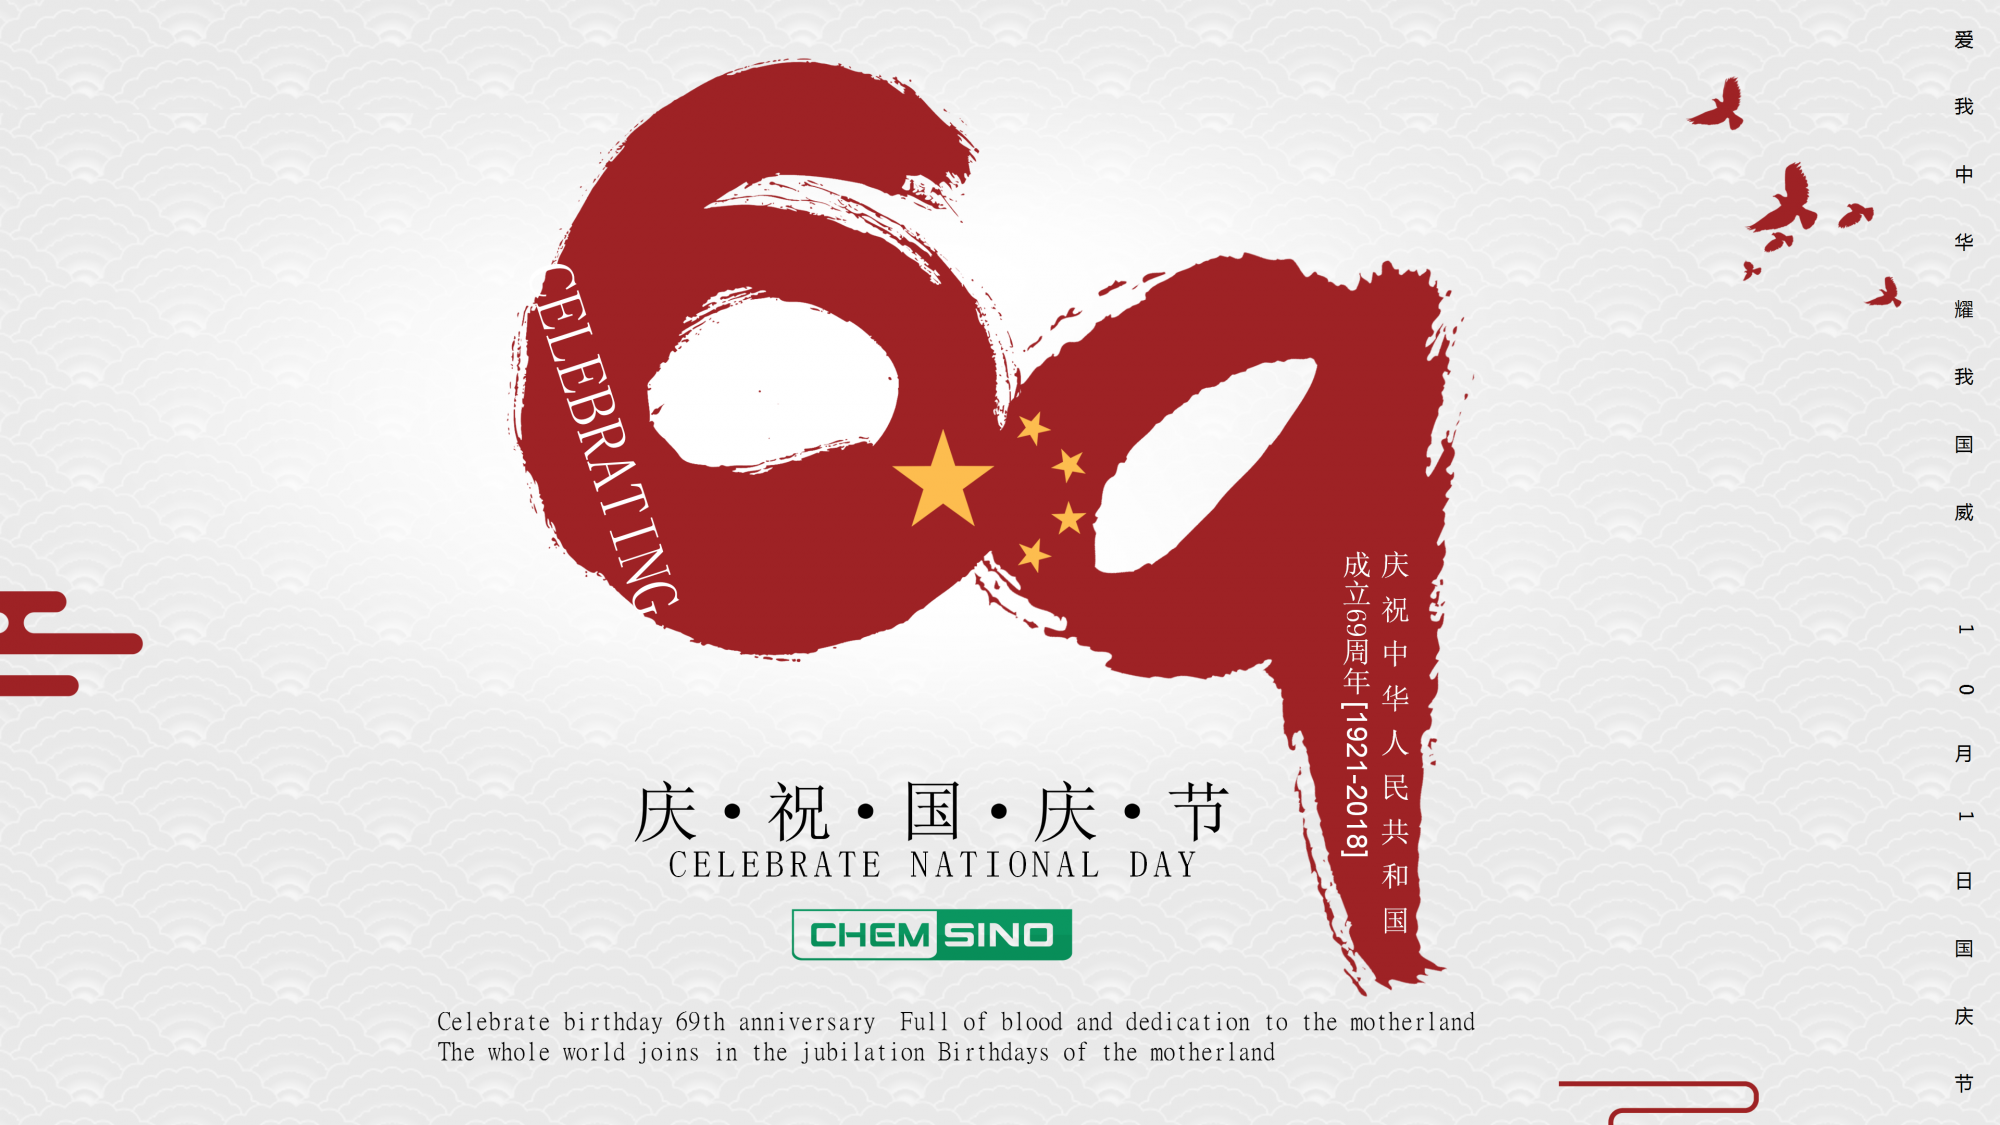 Celebrating Chinese National Day